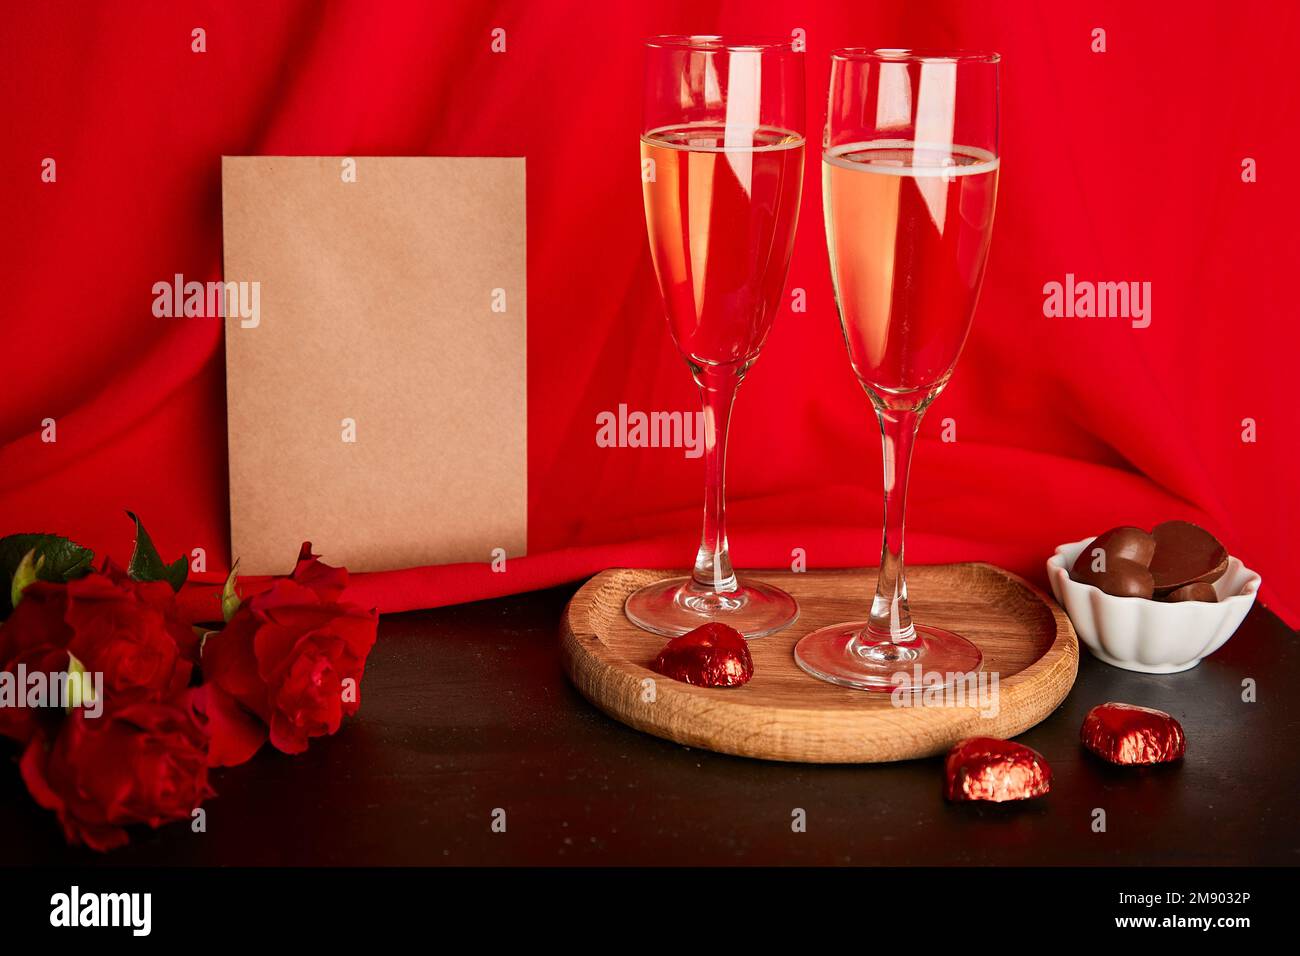 La cartolina del mestiere di San Valentino estetica di giorno in su. Cena romantica stagionale alla moda con cartolina, champagne, rose e caramelle al cioccolato. Foto Stock